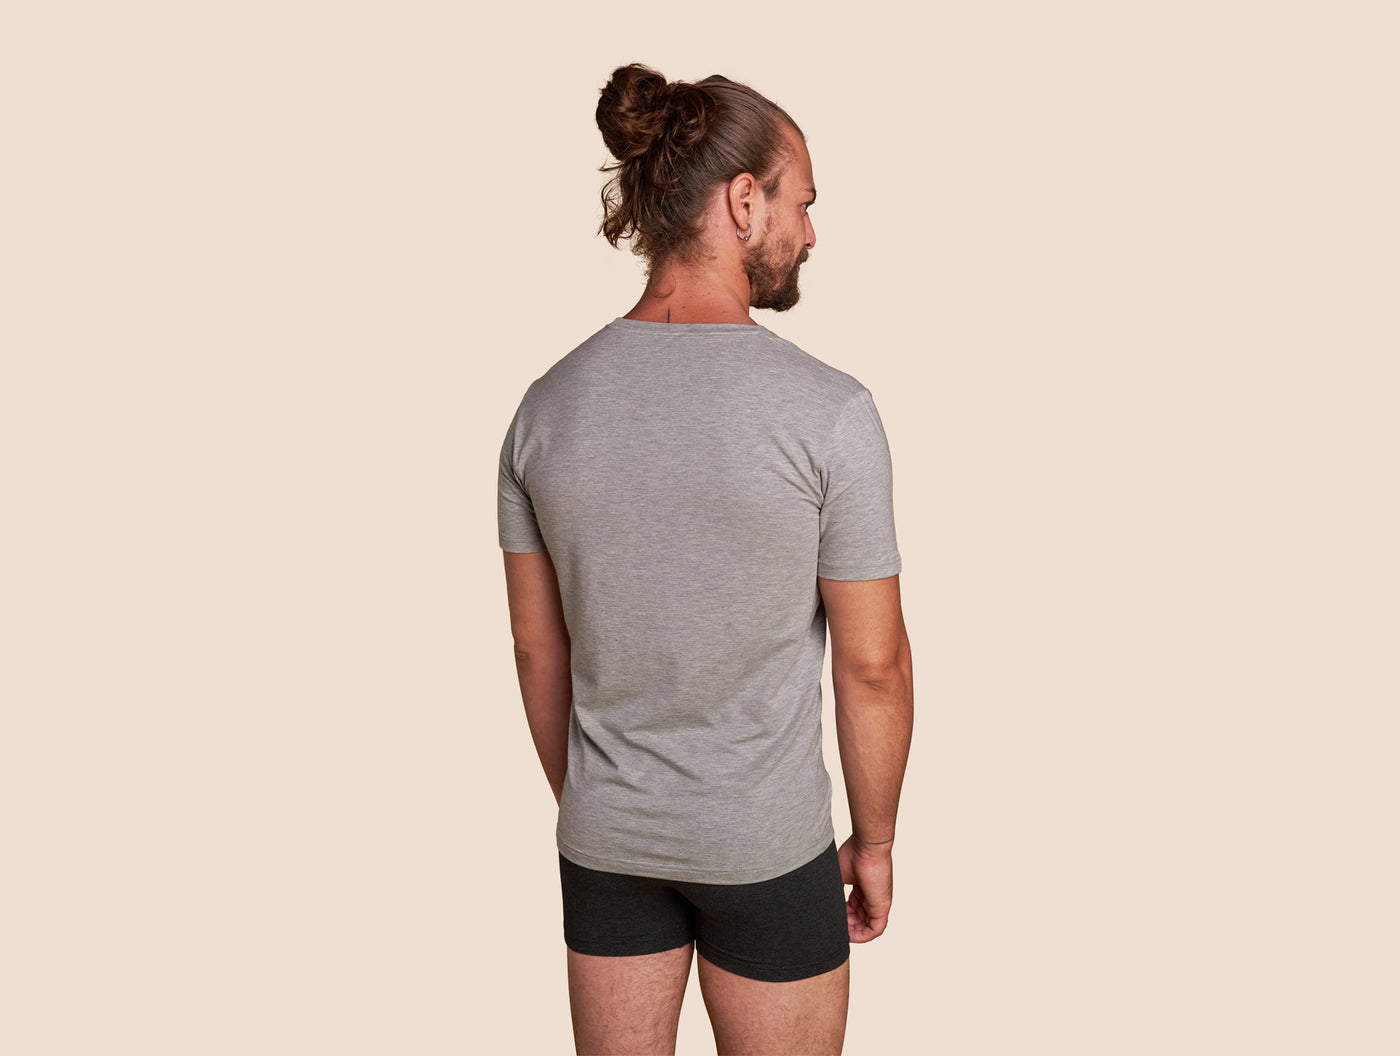 Pétrone T-shirt col V coton pima micromodal gris chiné clair homme#couleur_gris-chiné-clair